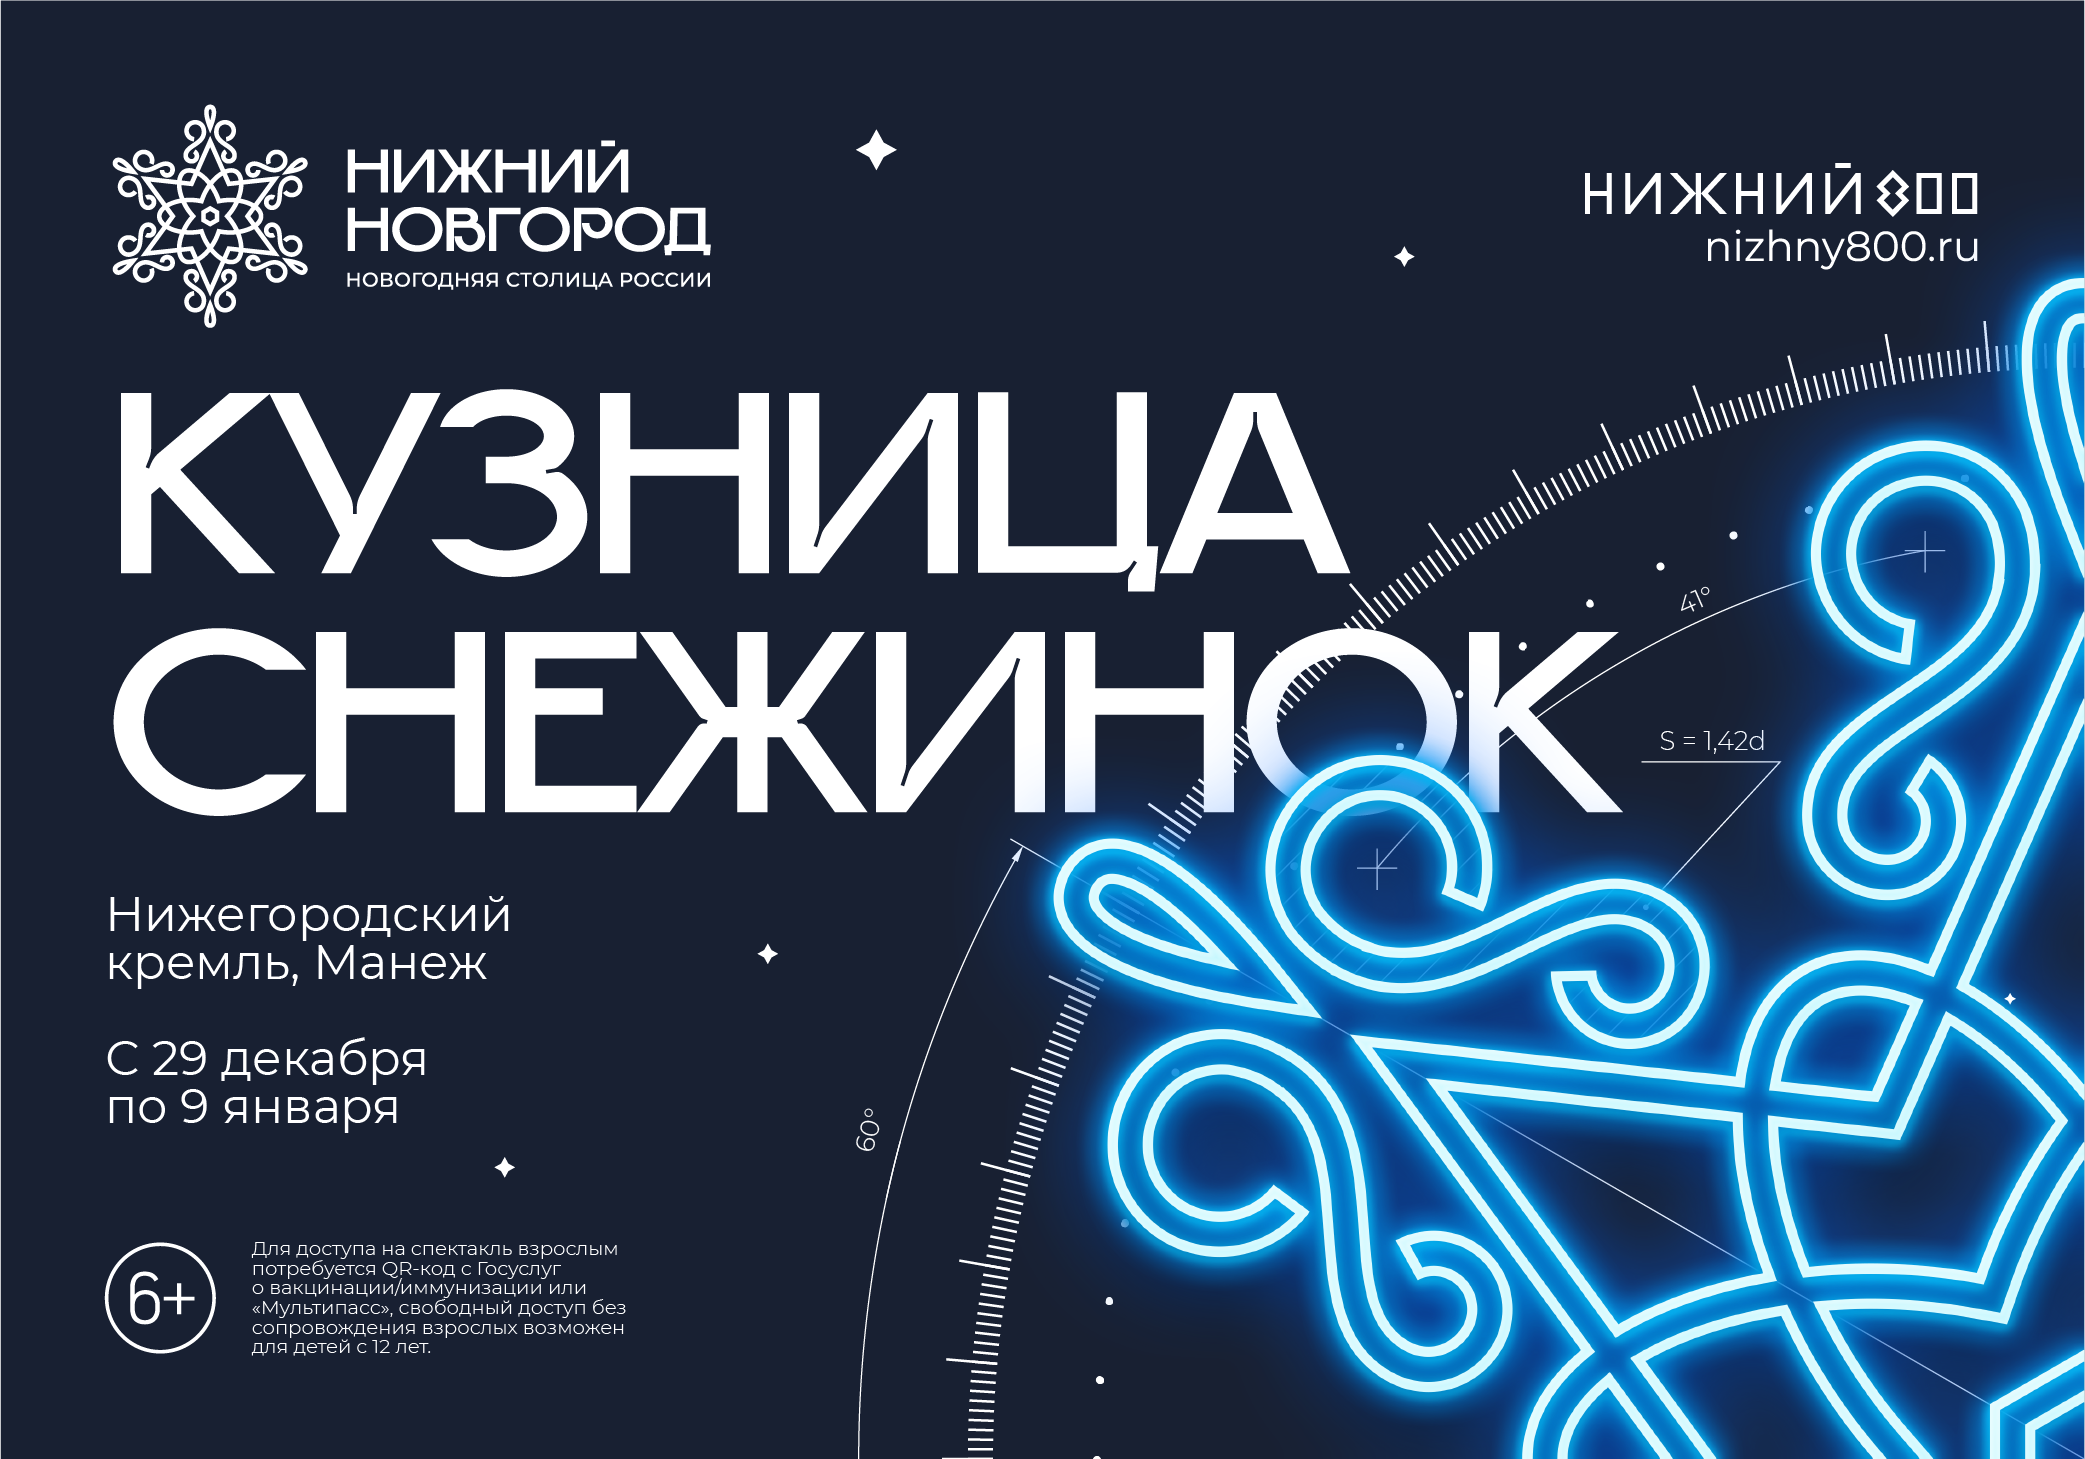 Мультимедийный спектакль «Кузница снежинок» будет проходить в здании Манежа Нижегородского кремля в новогодние каникулы